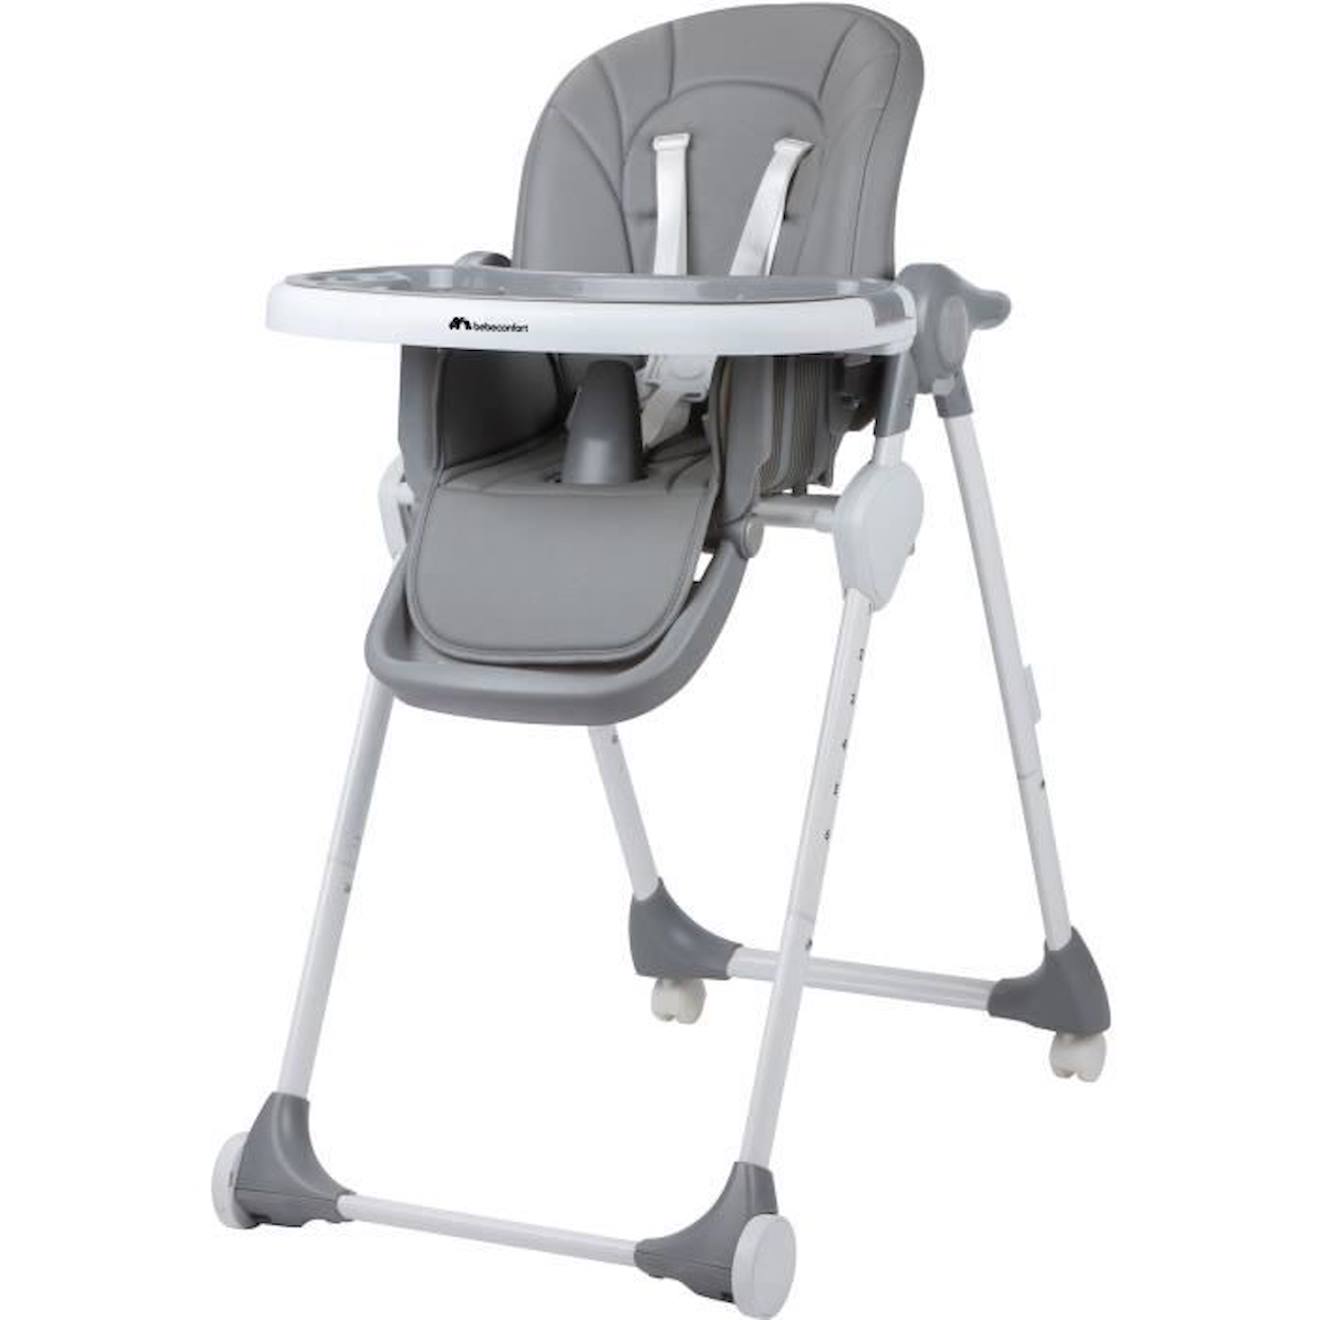 BEBECONFORT Looky Chaise haute bébé, évolutive multi-positions, De 6 mois à  3 ans (15kg),Warm gray gris - Bébé Confort